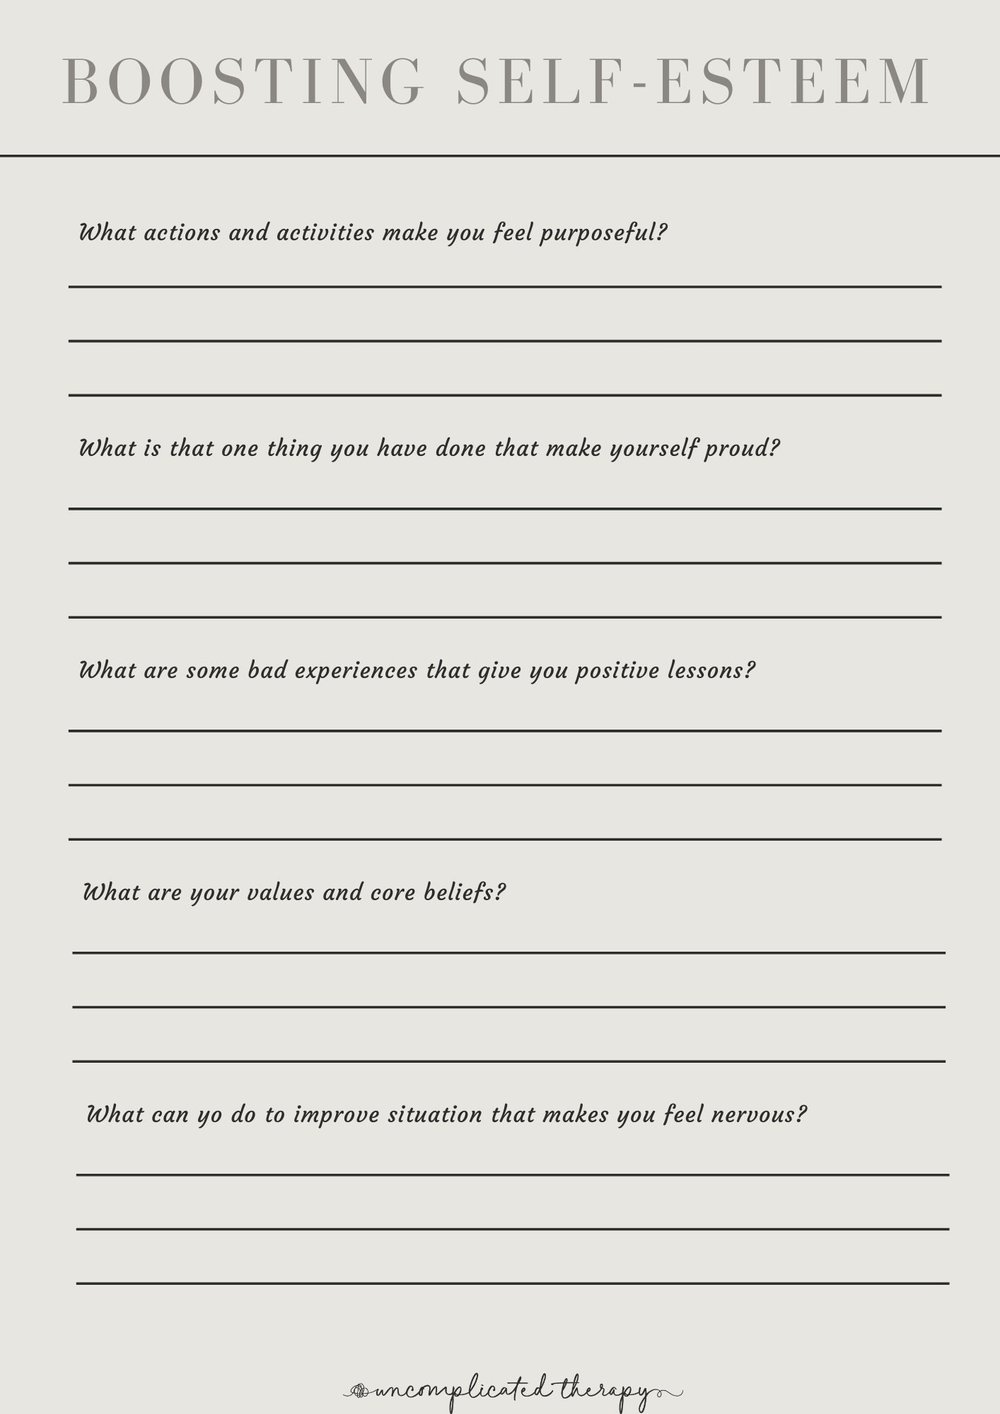 Self-Esteem WorkBook PDF | HerTruSelf